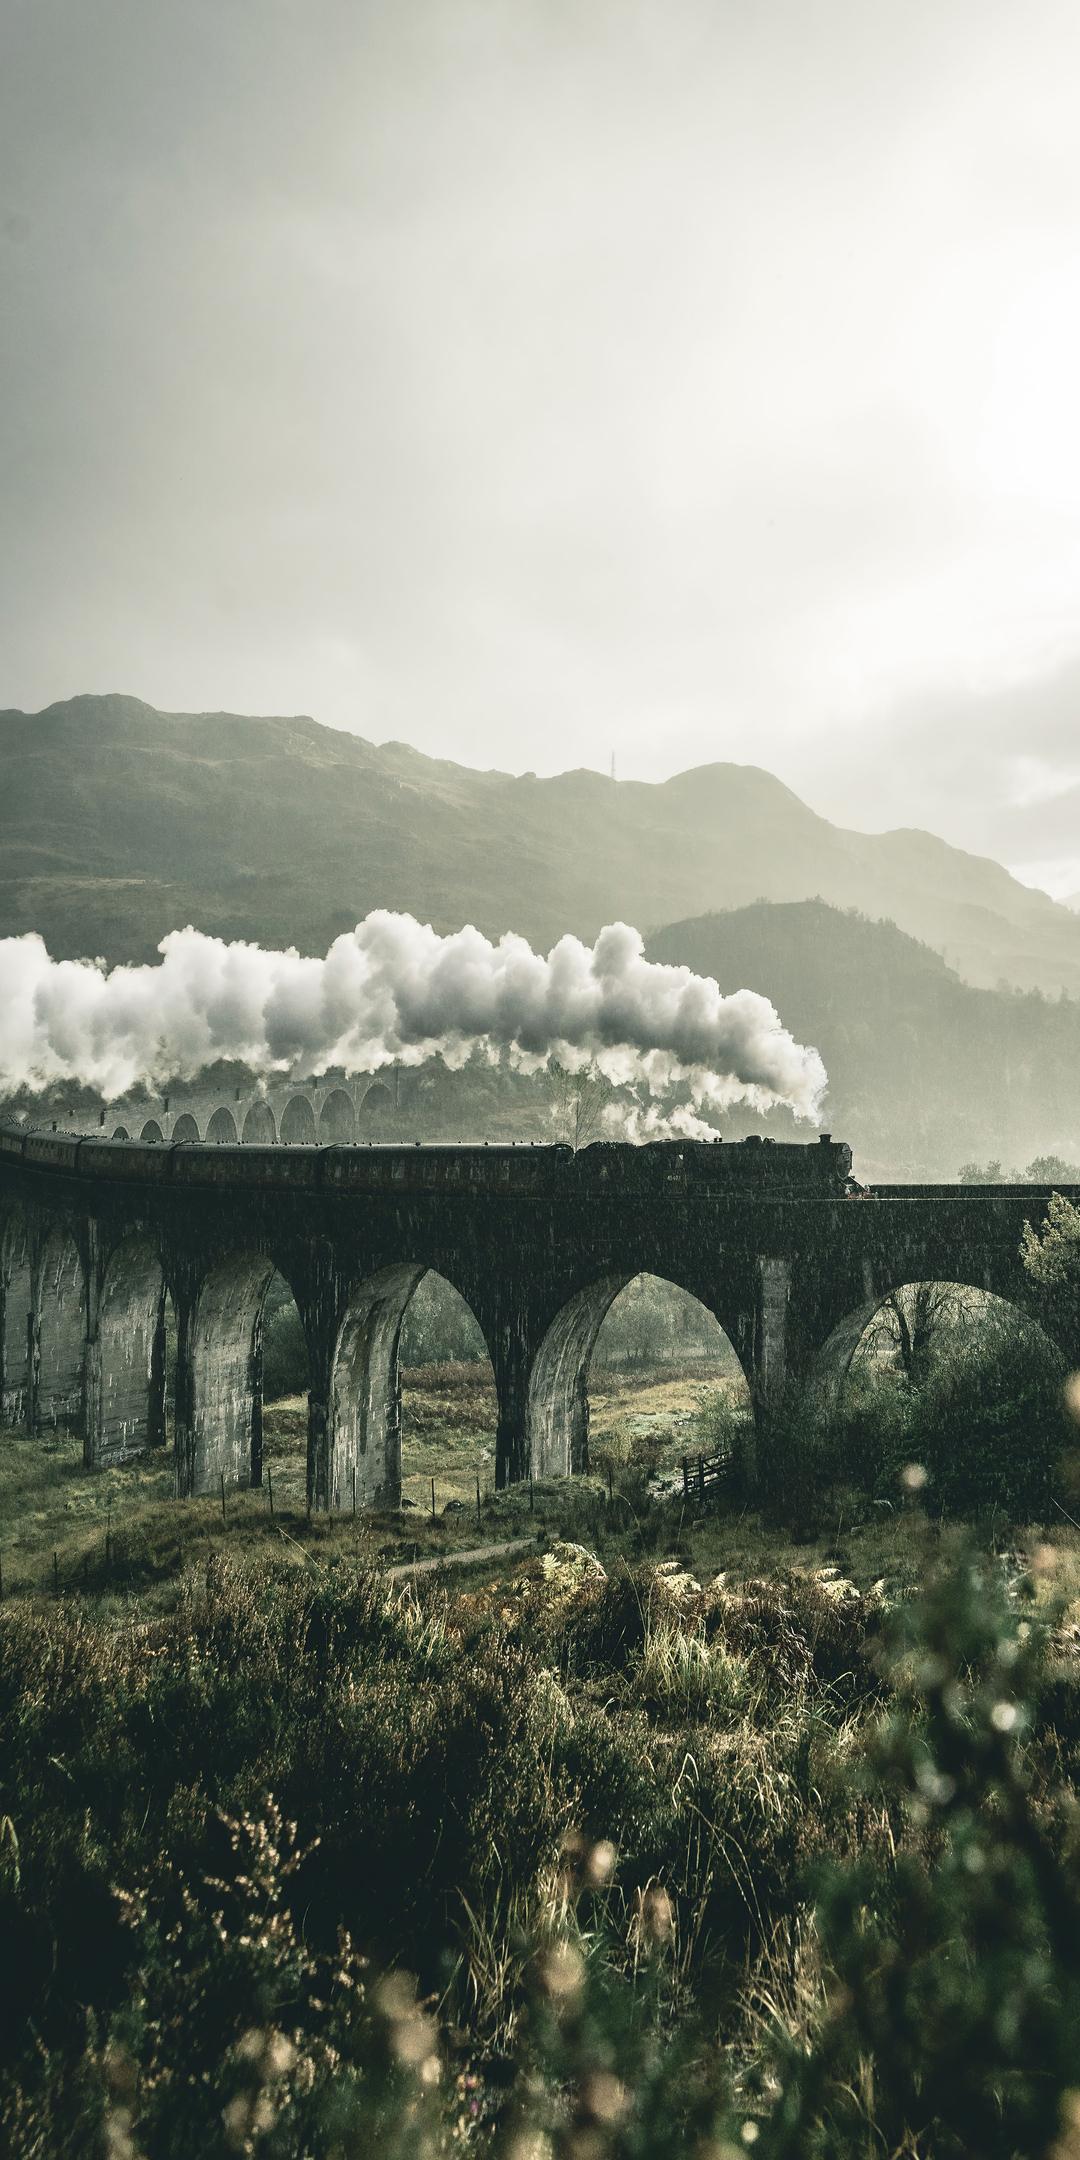 black-train-on-railway-bridge-under-heavy-clouds-8o.jpg